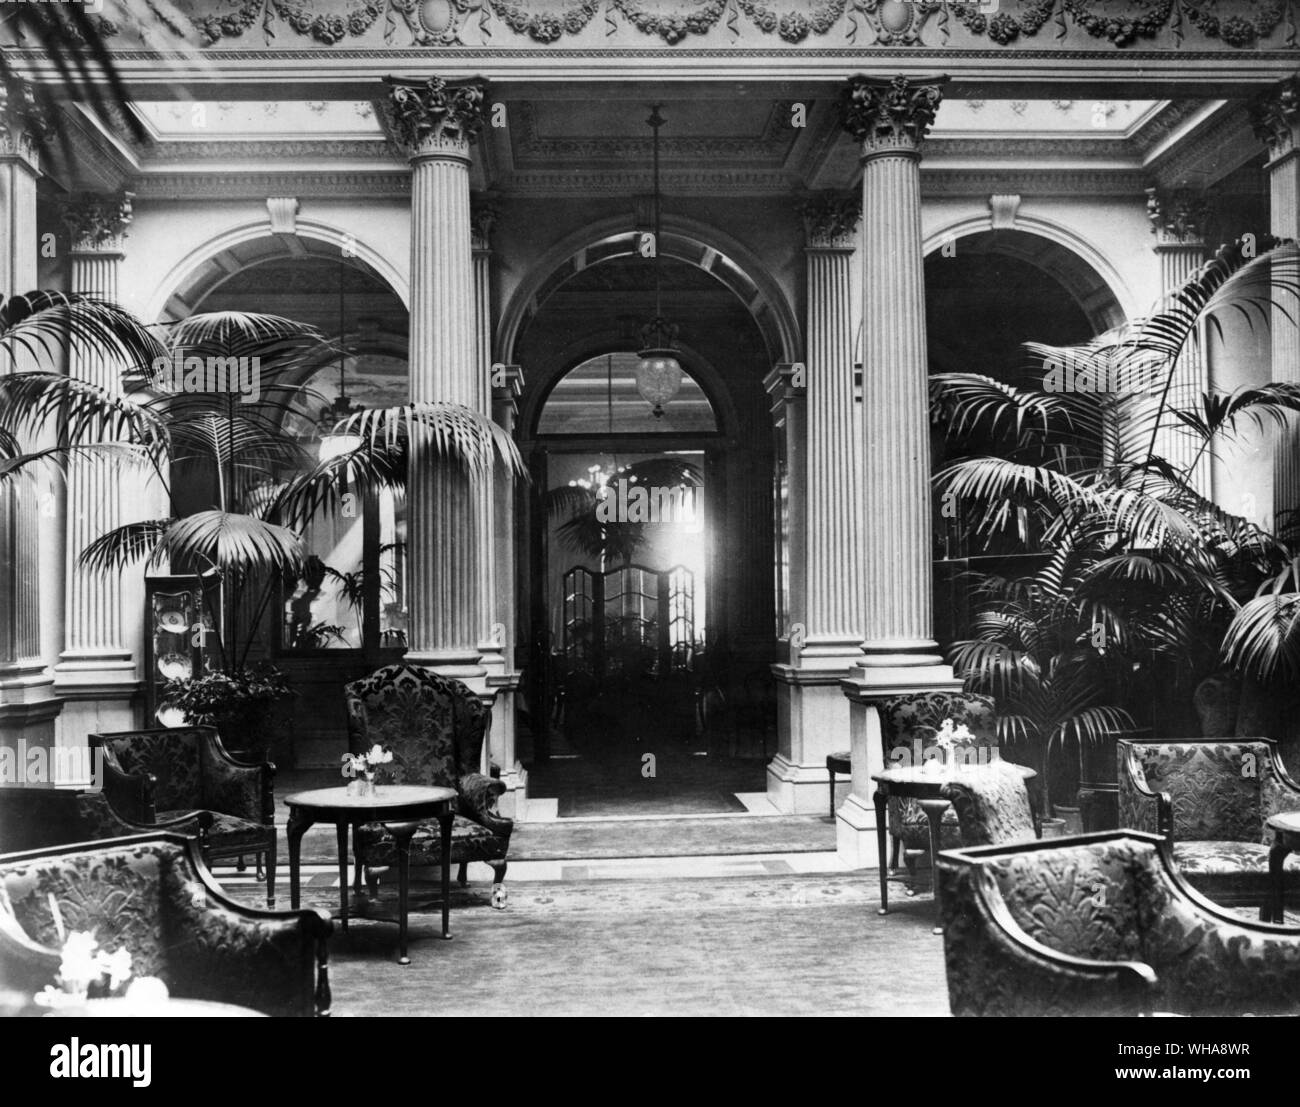 L'hôtel Savoy de Londres. Jardin d'hiver c1900 Banque D'Images